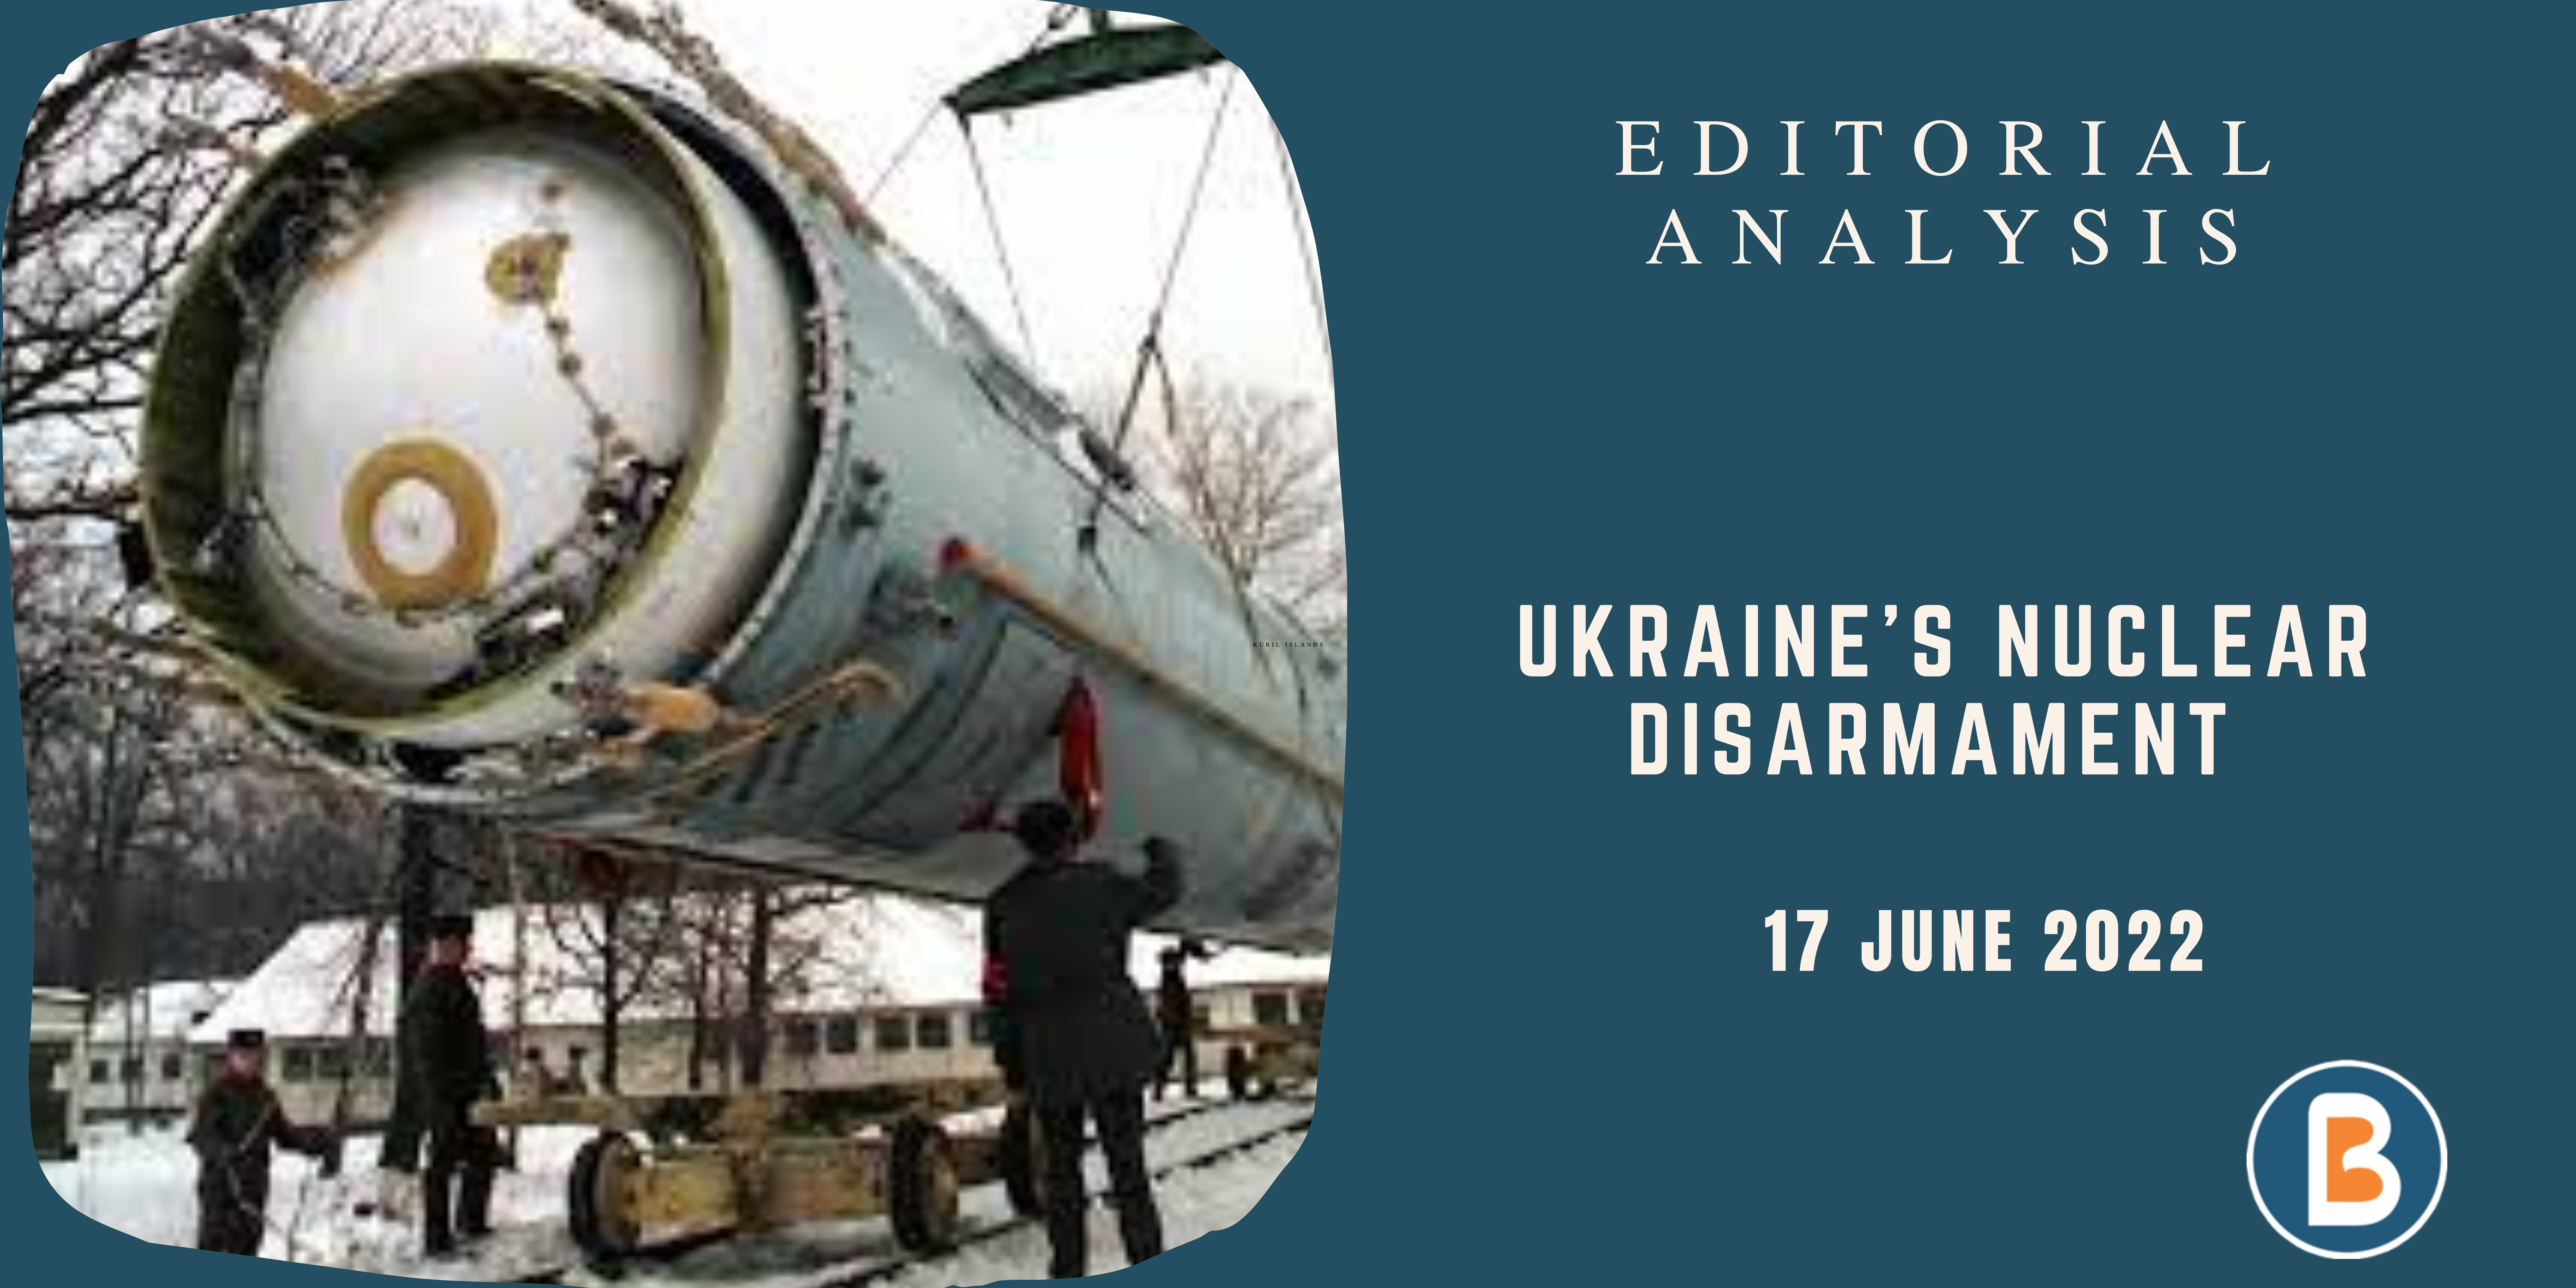 Editorial Analysis for IAS - Ukraine’s Nuclear Disarmament